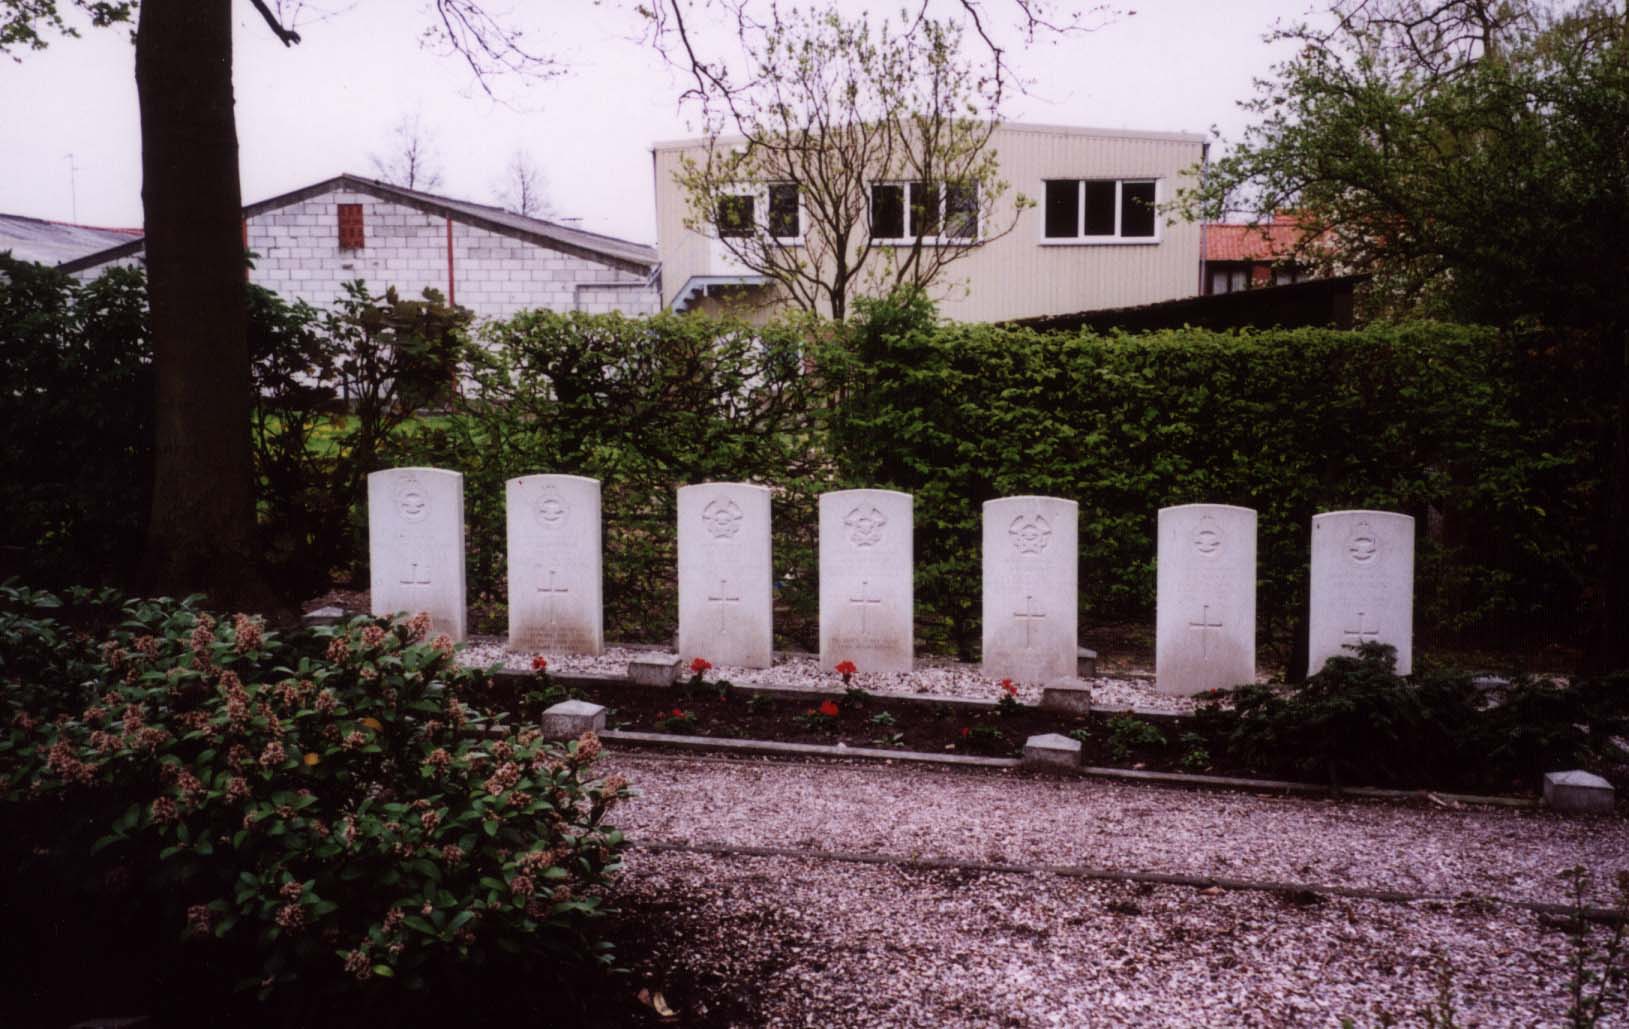 Aardenburg General Cemetery, Netherlands